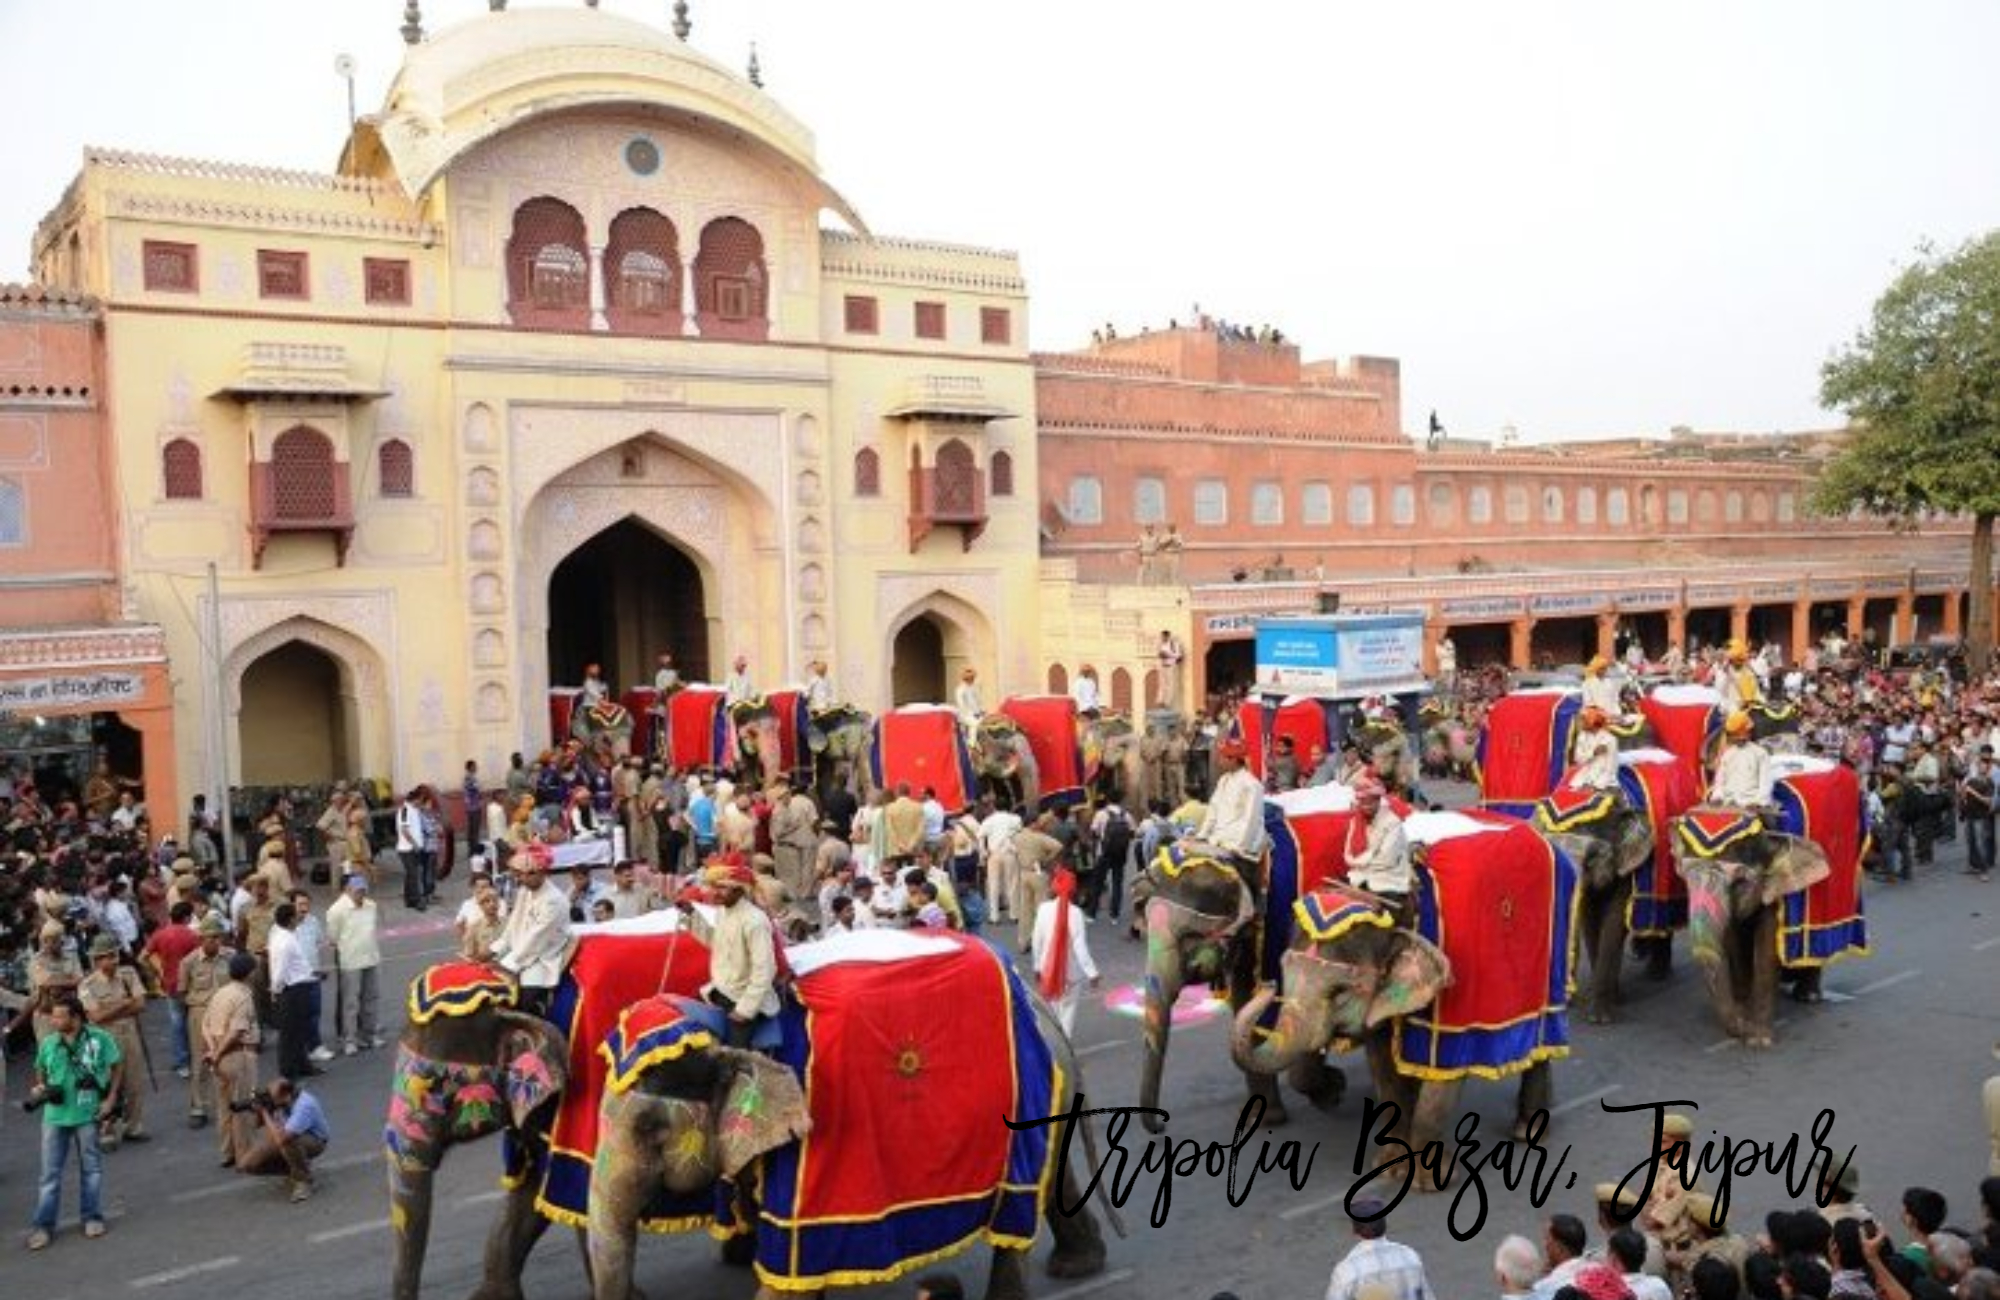 tripolia bazar jaipur, jaipur tourist places, best places to visit in jaipur,